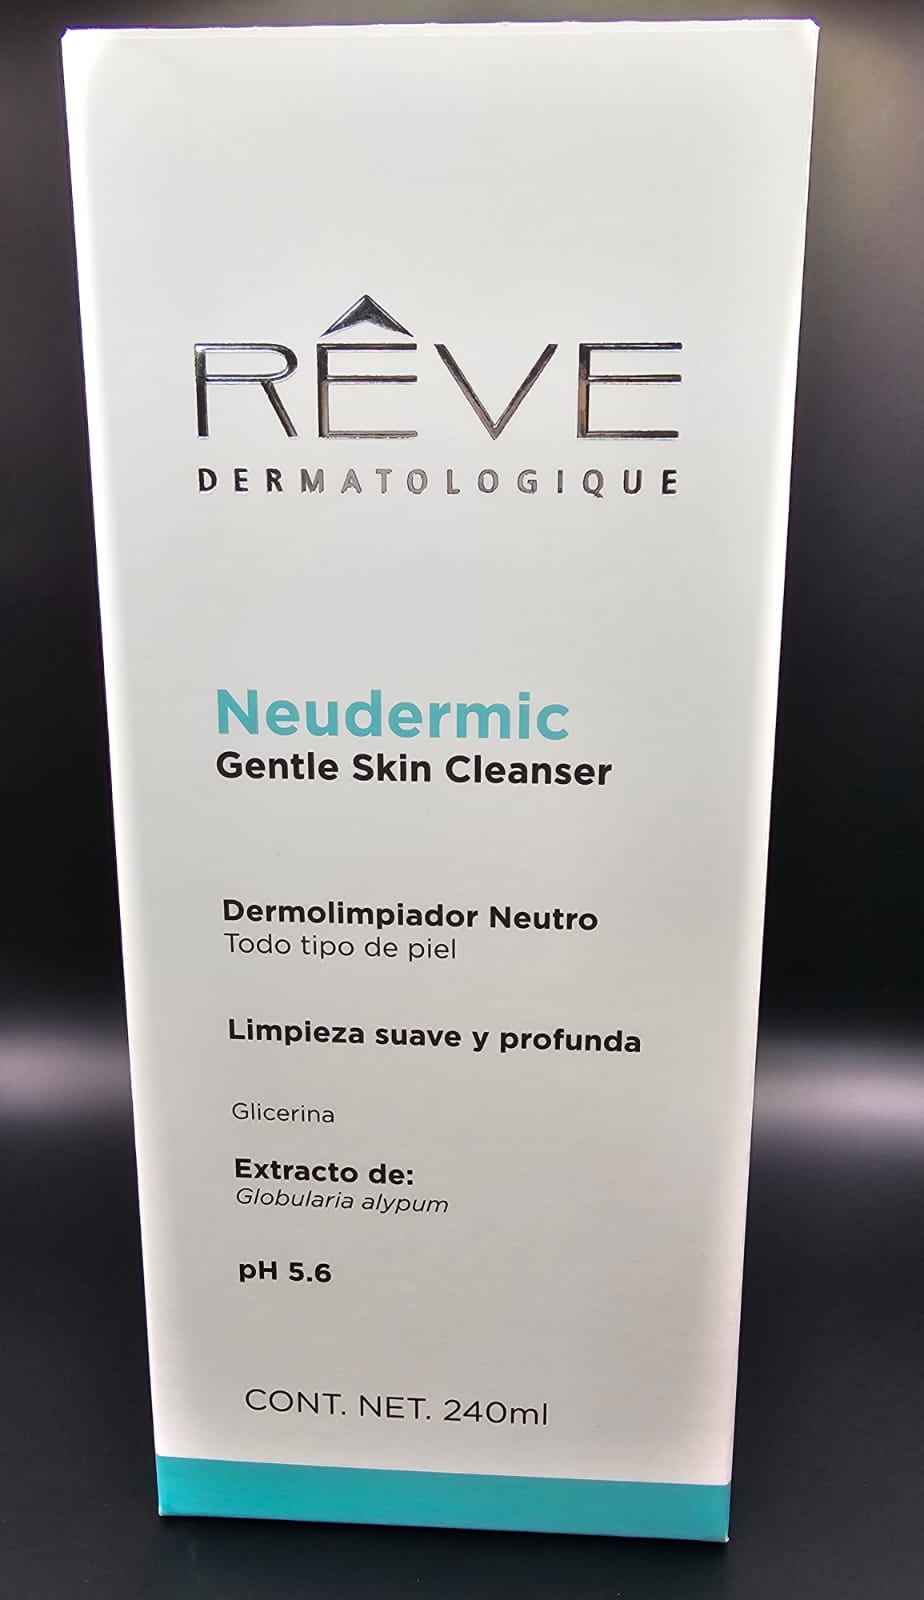 Neudermic Gentle Skin Cleanser